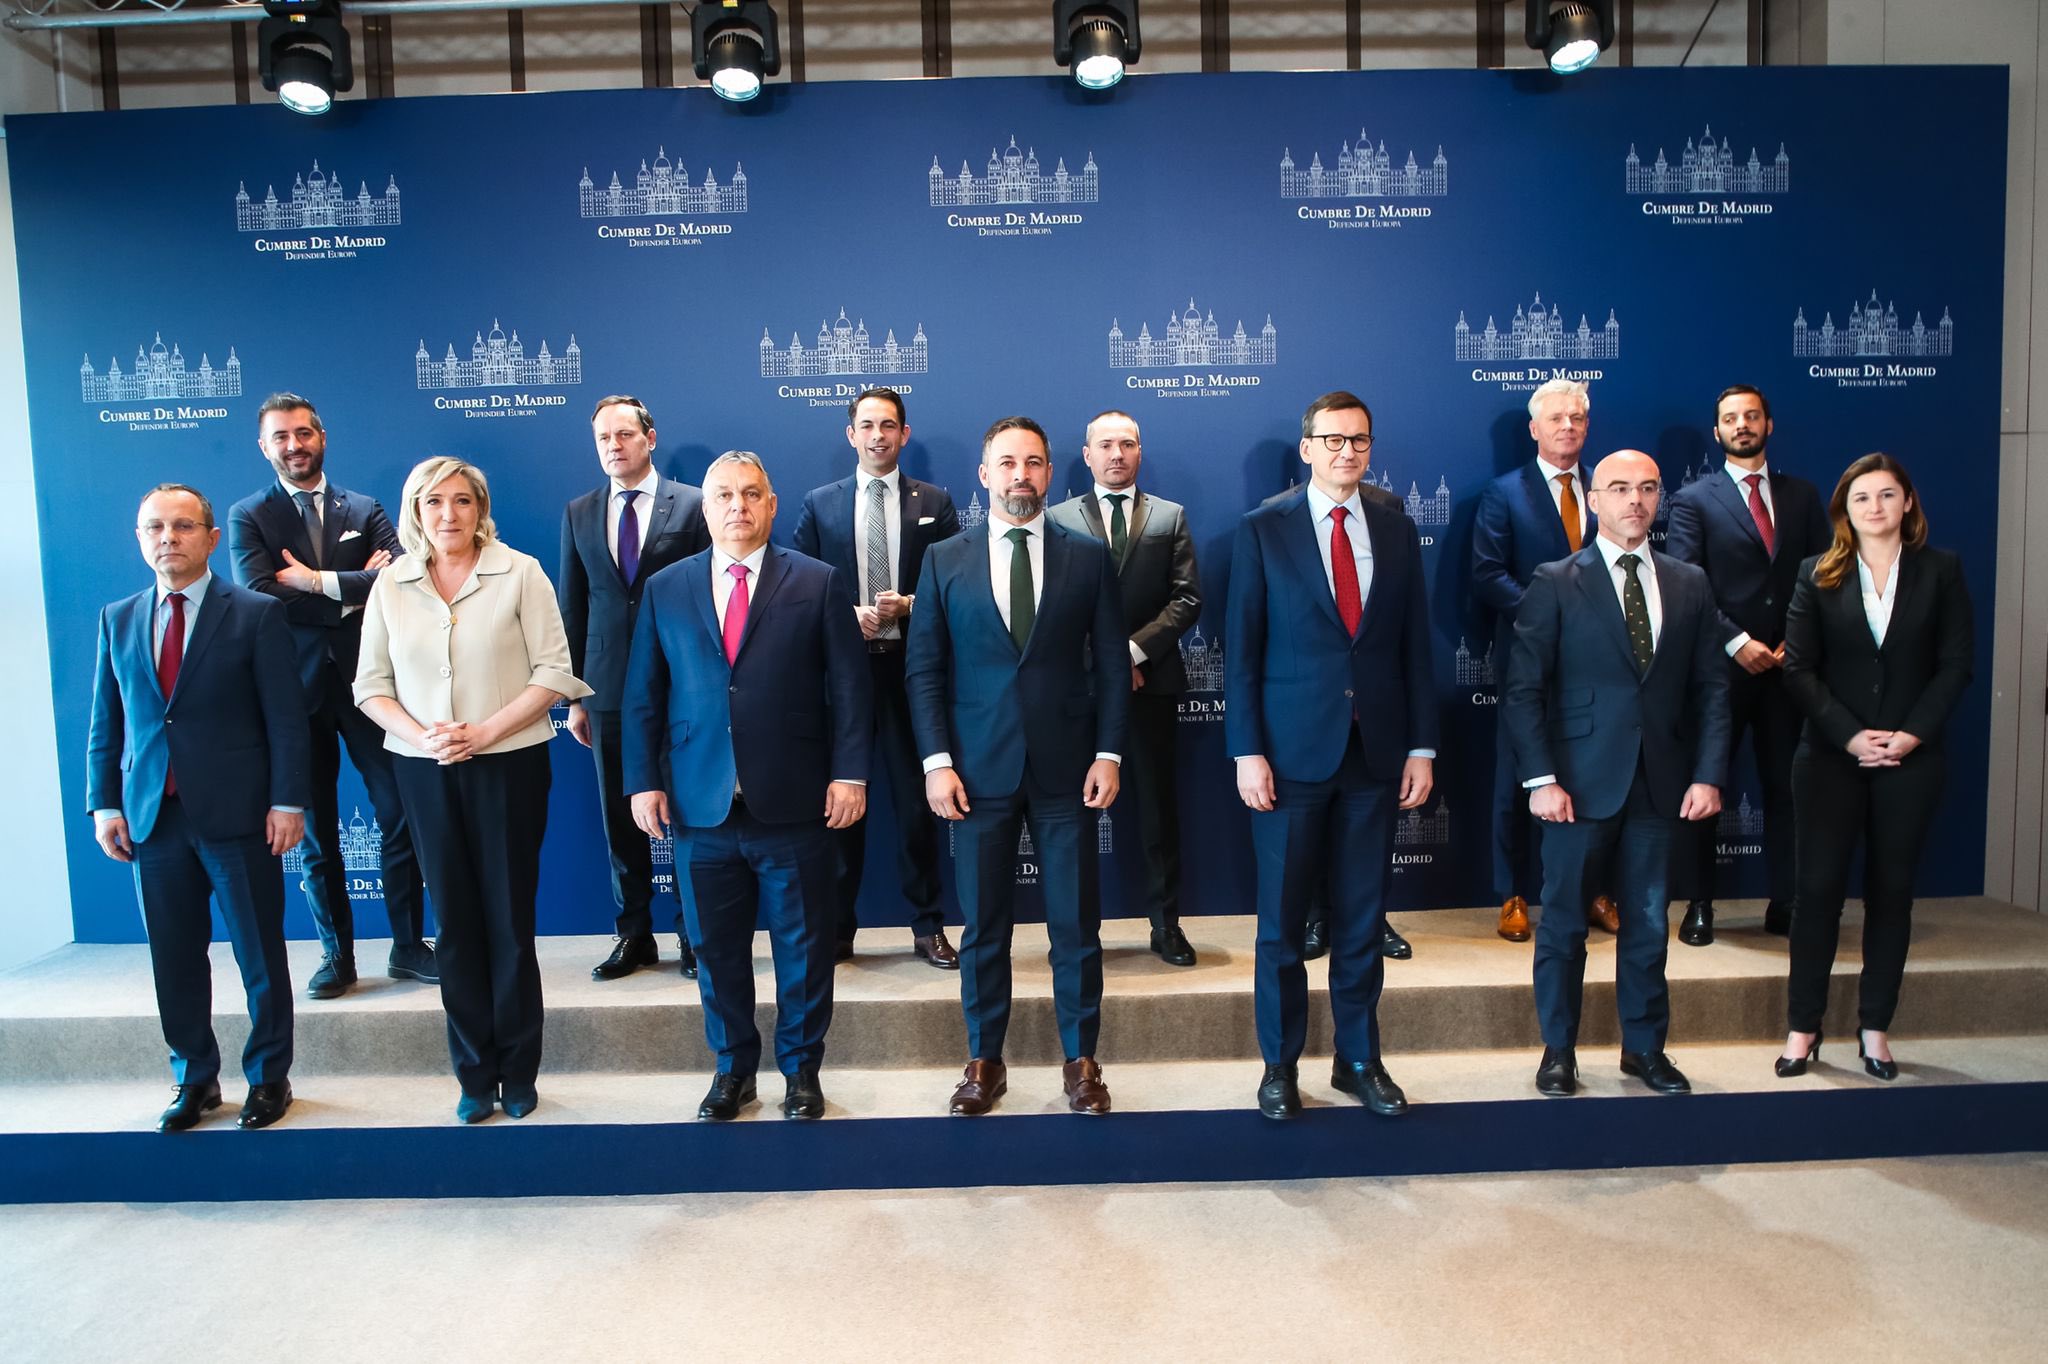 Úgy tűnik, Orbán és európai partnerei mégsem ítélték el Oroszországot